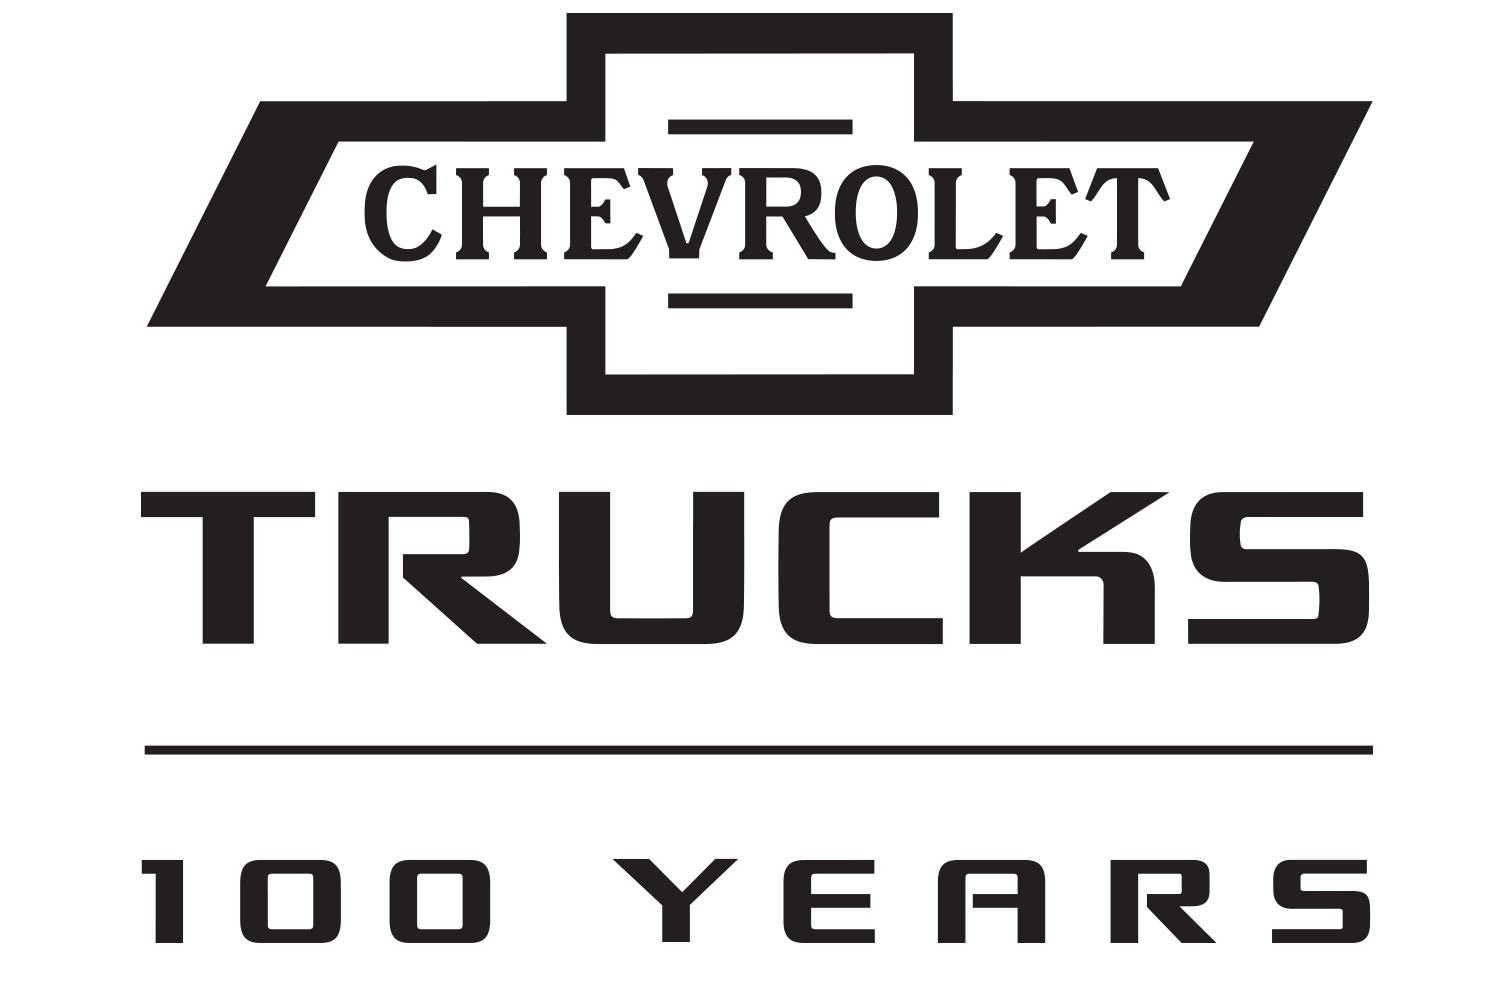 Chevrolet Truck Logo - Flemingsburg Kentucky Chevrolet Dealership